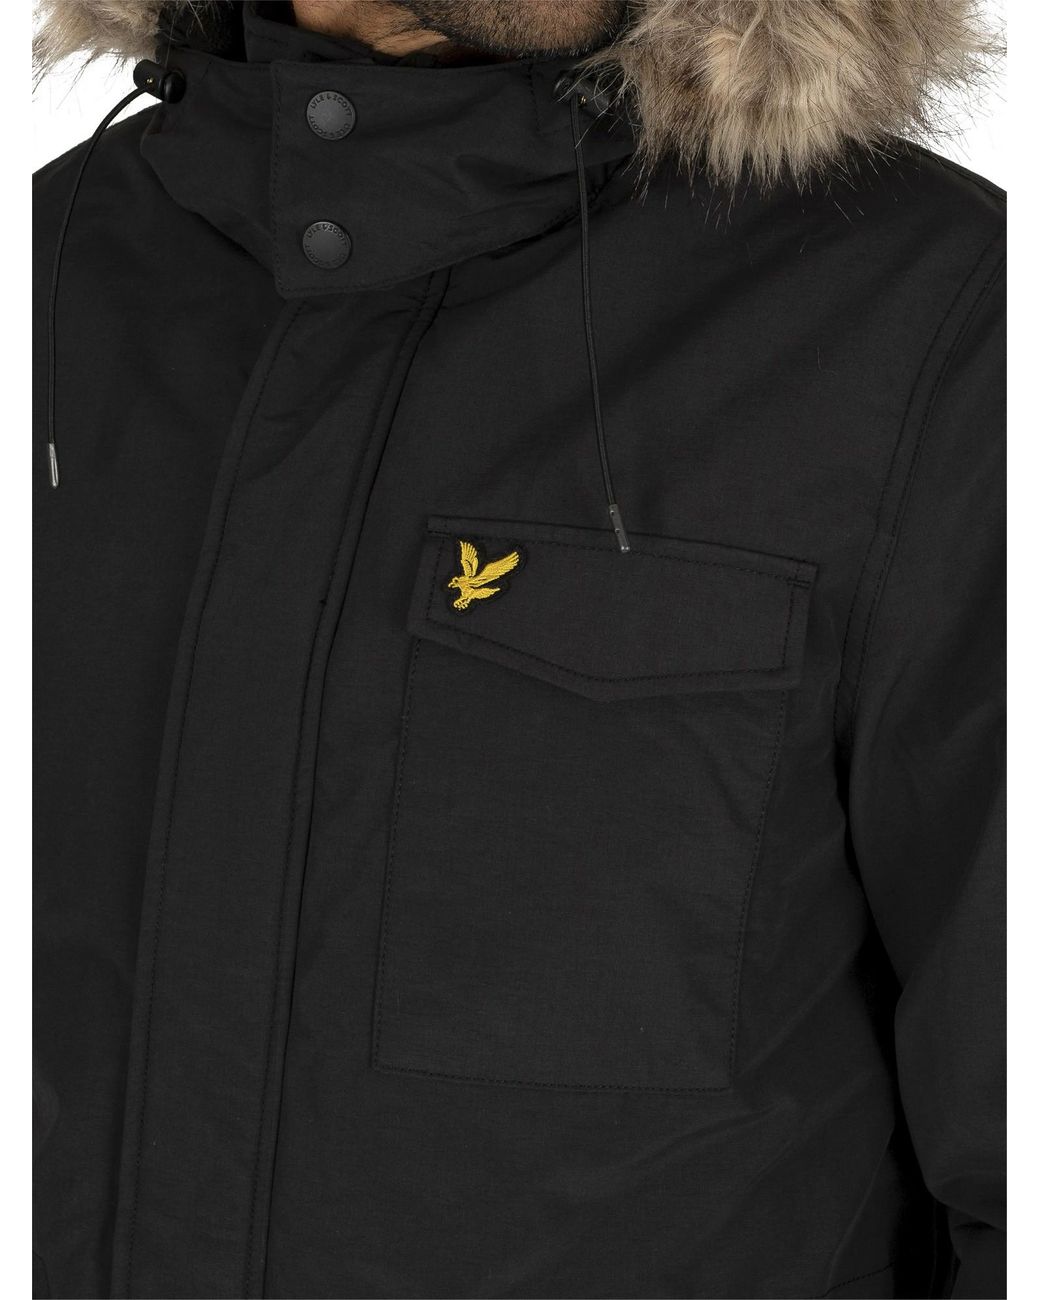 Lyle & Scott Winter Weight Microfleece Parka Jacket in Black for Men | Lyst  UK